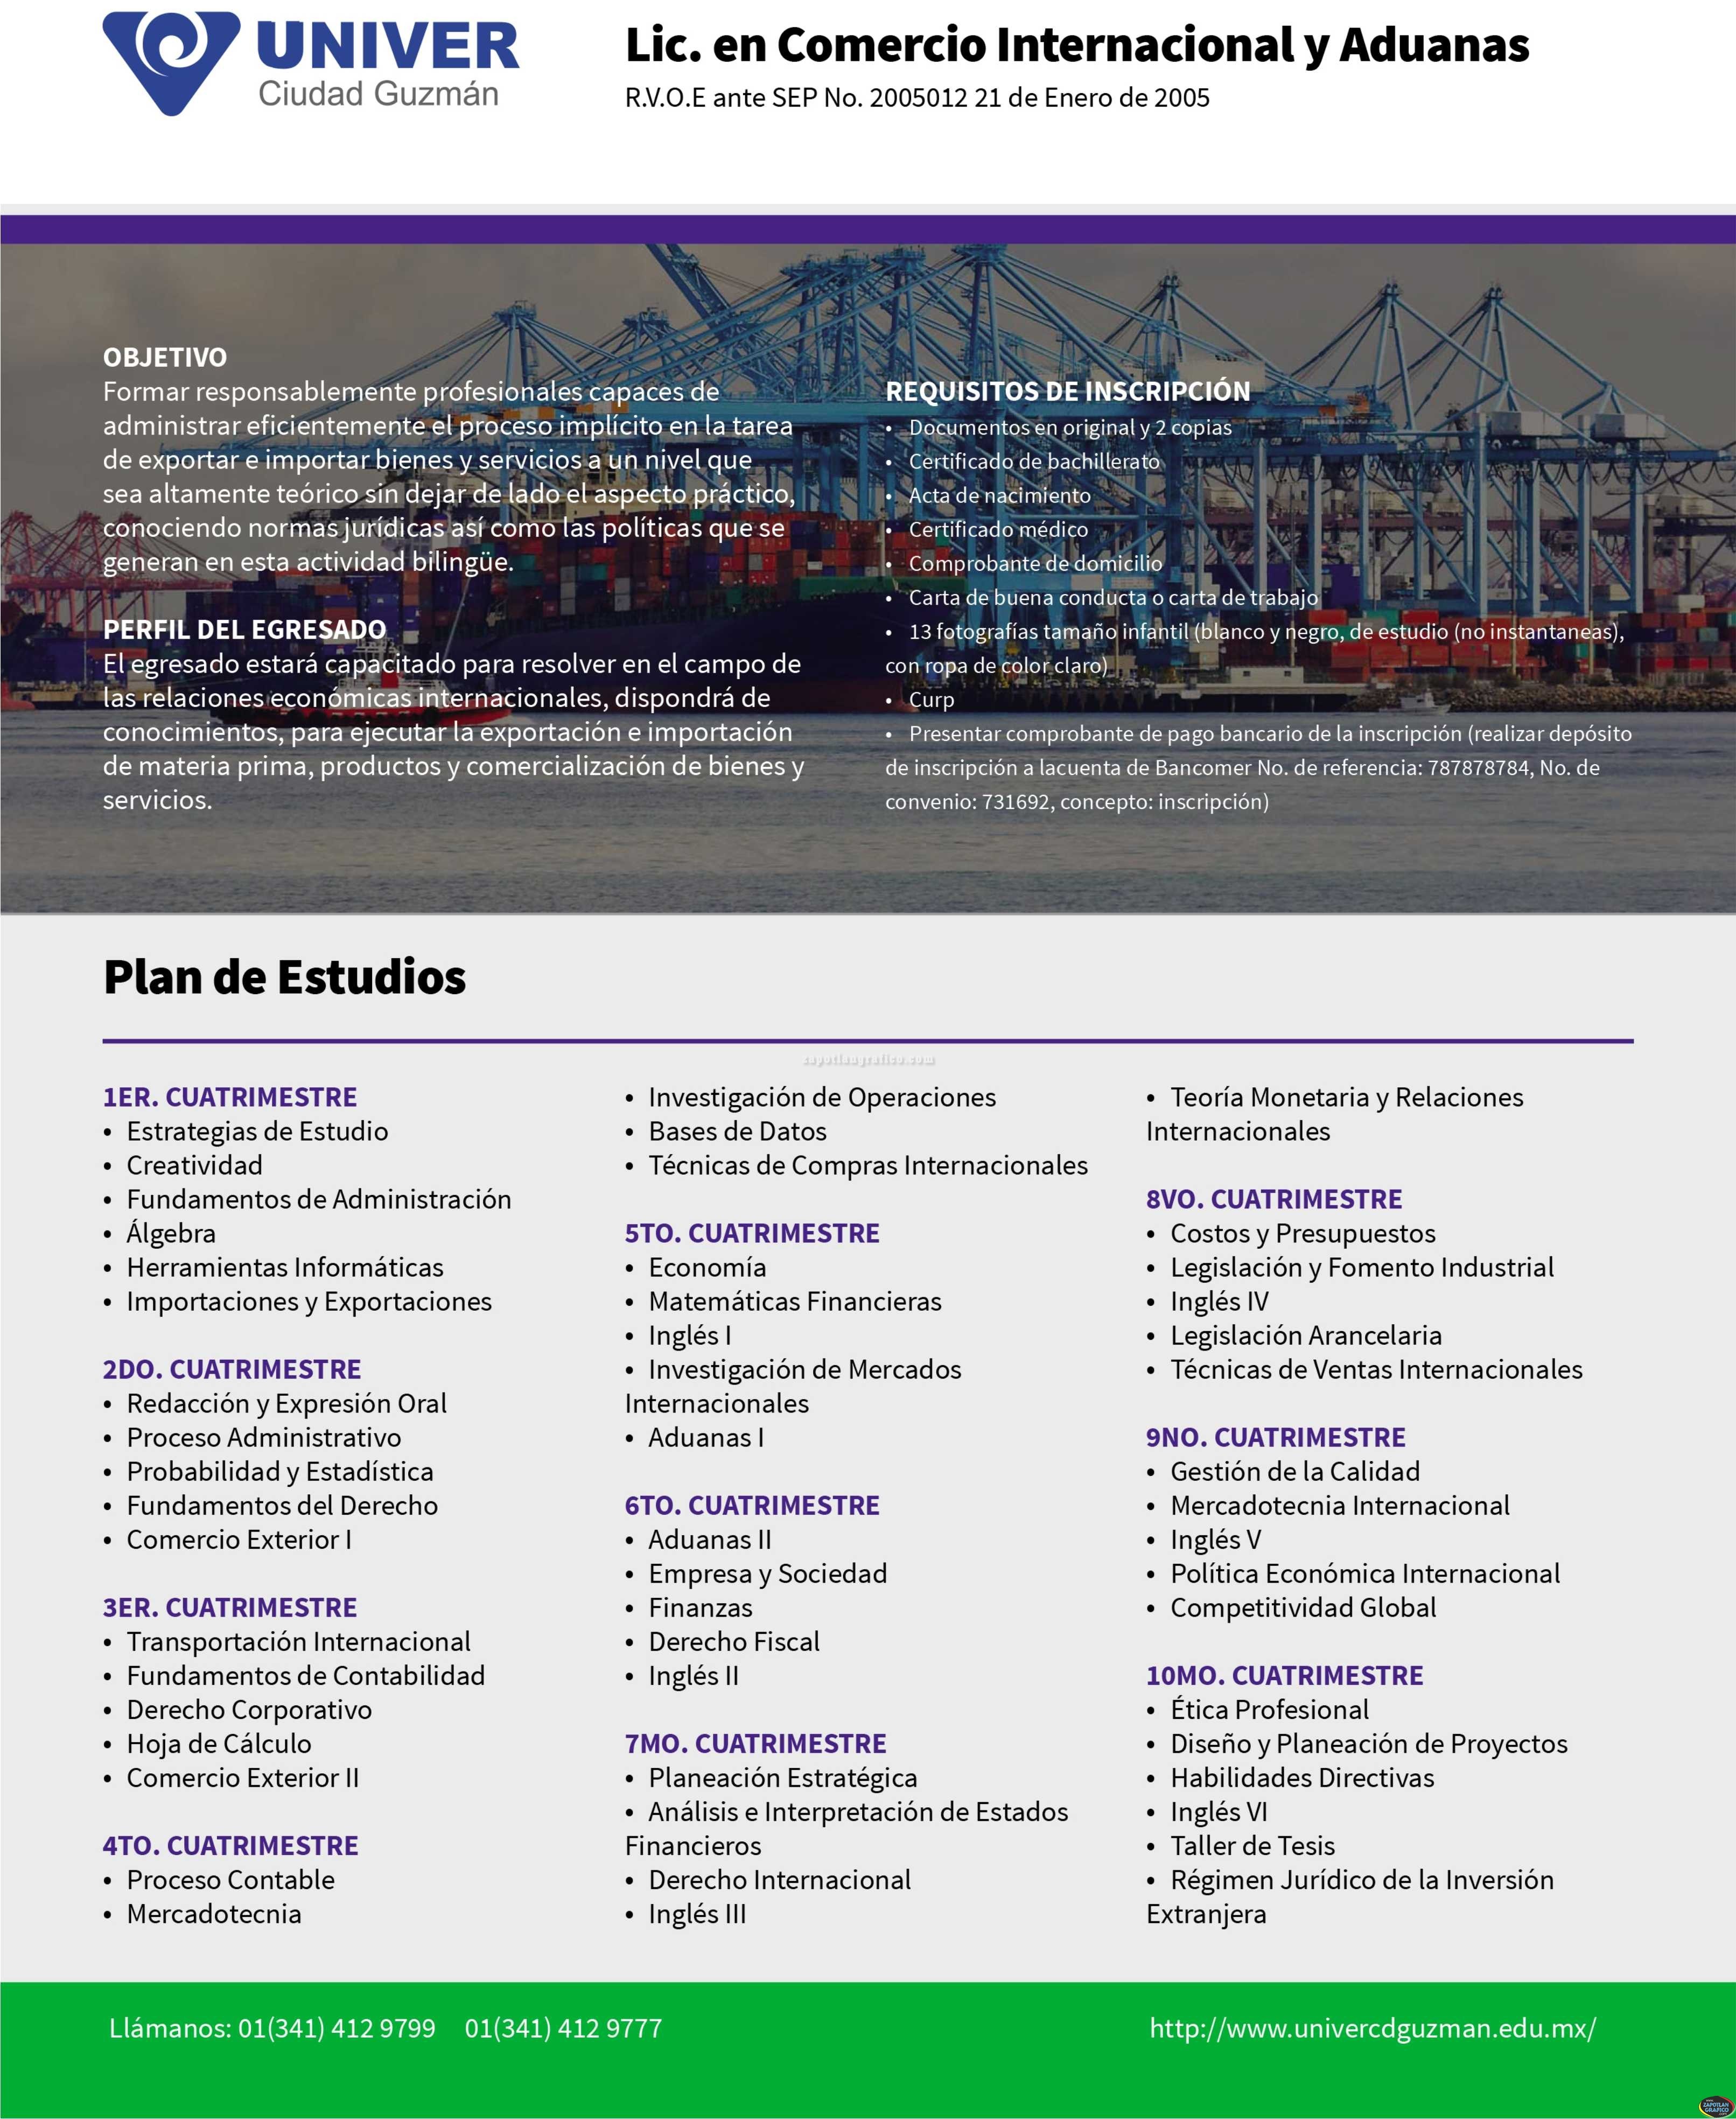 Plan de Estudios: Licenciatura en Comercio Internacional UNIVER Ciudad Guzmán, Jal.